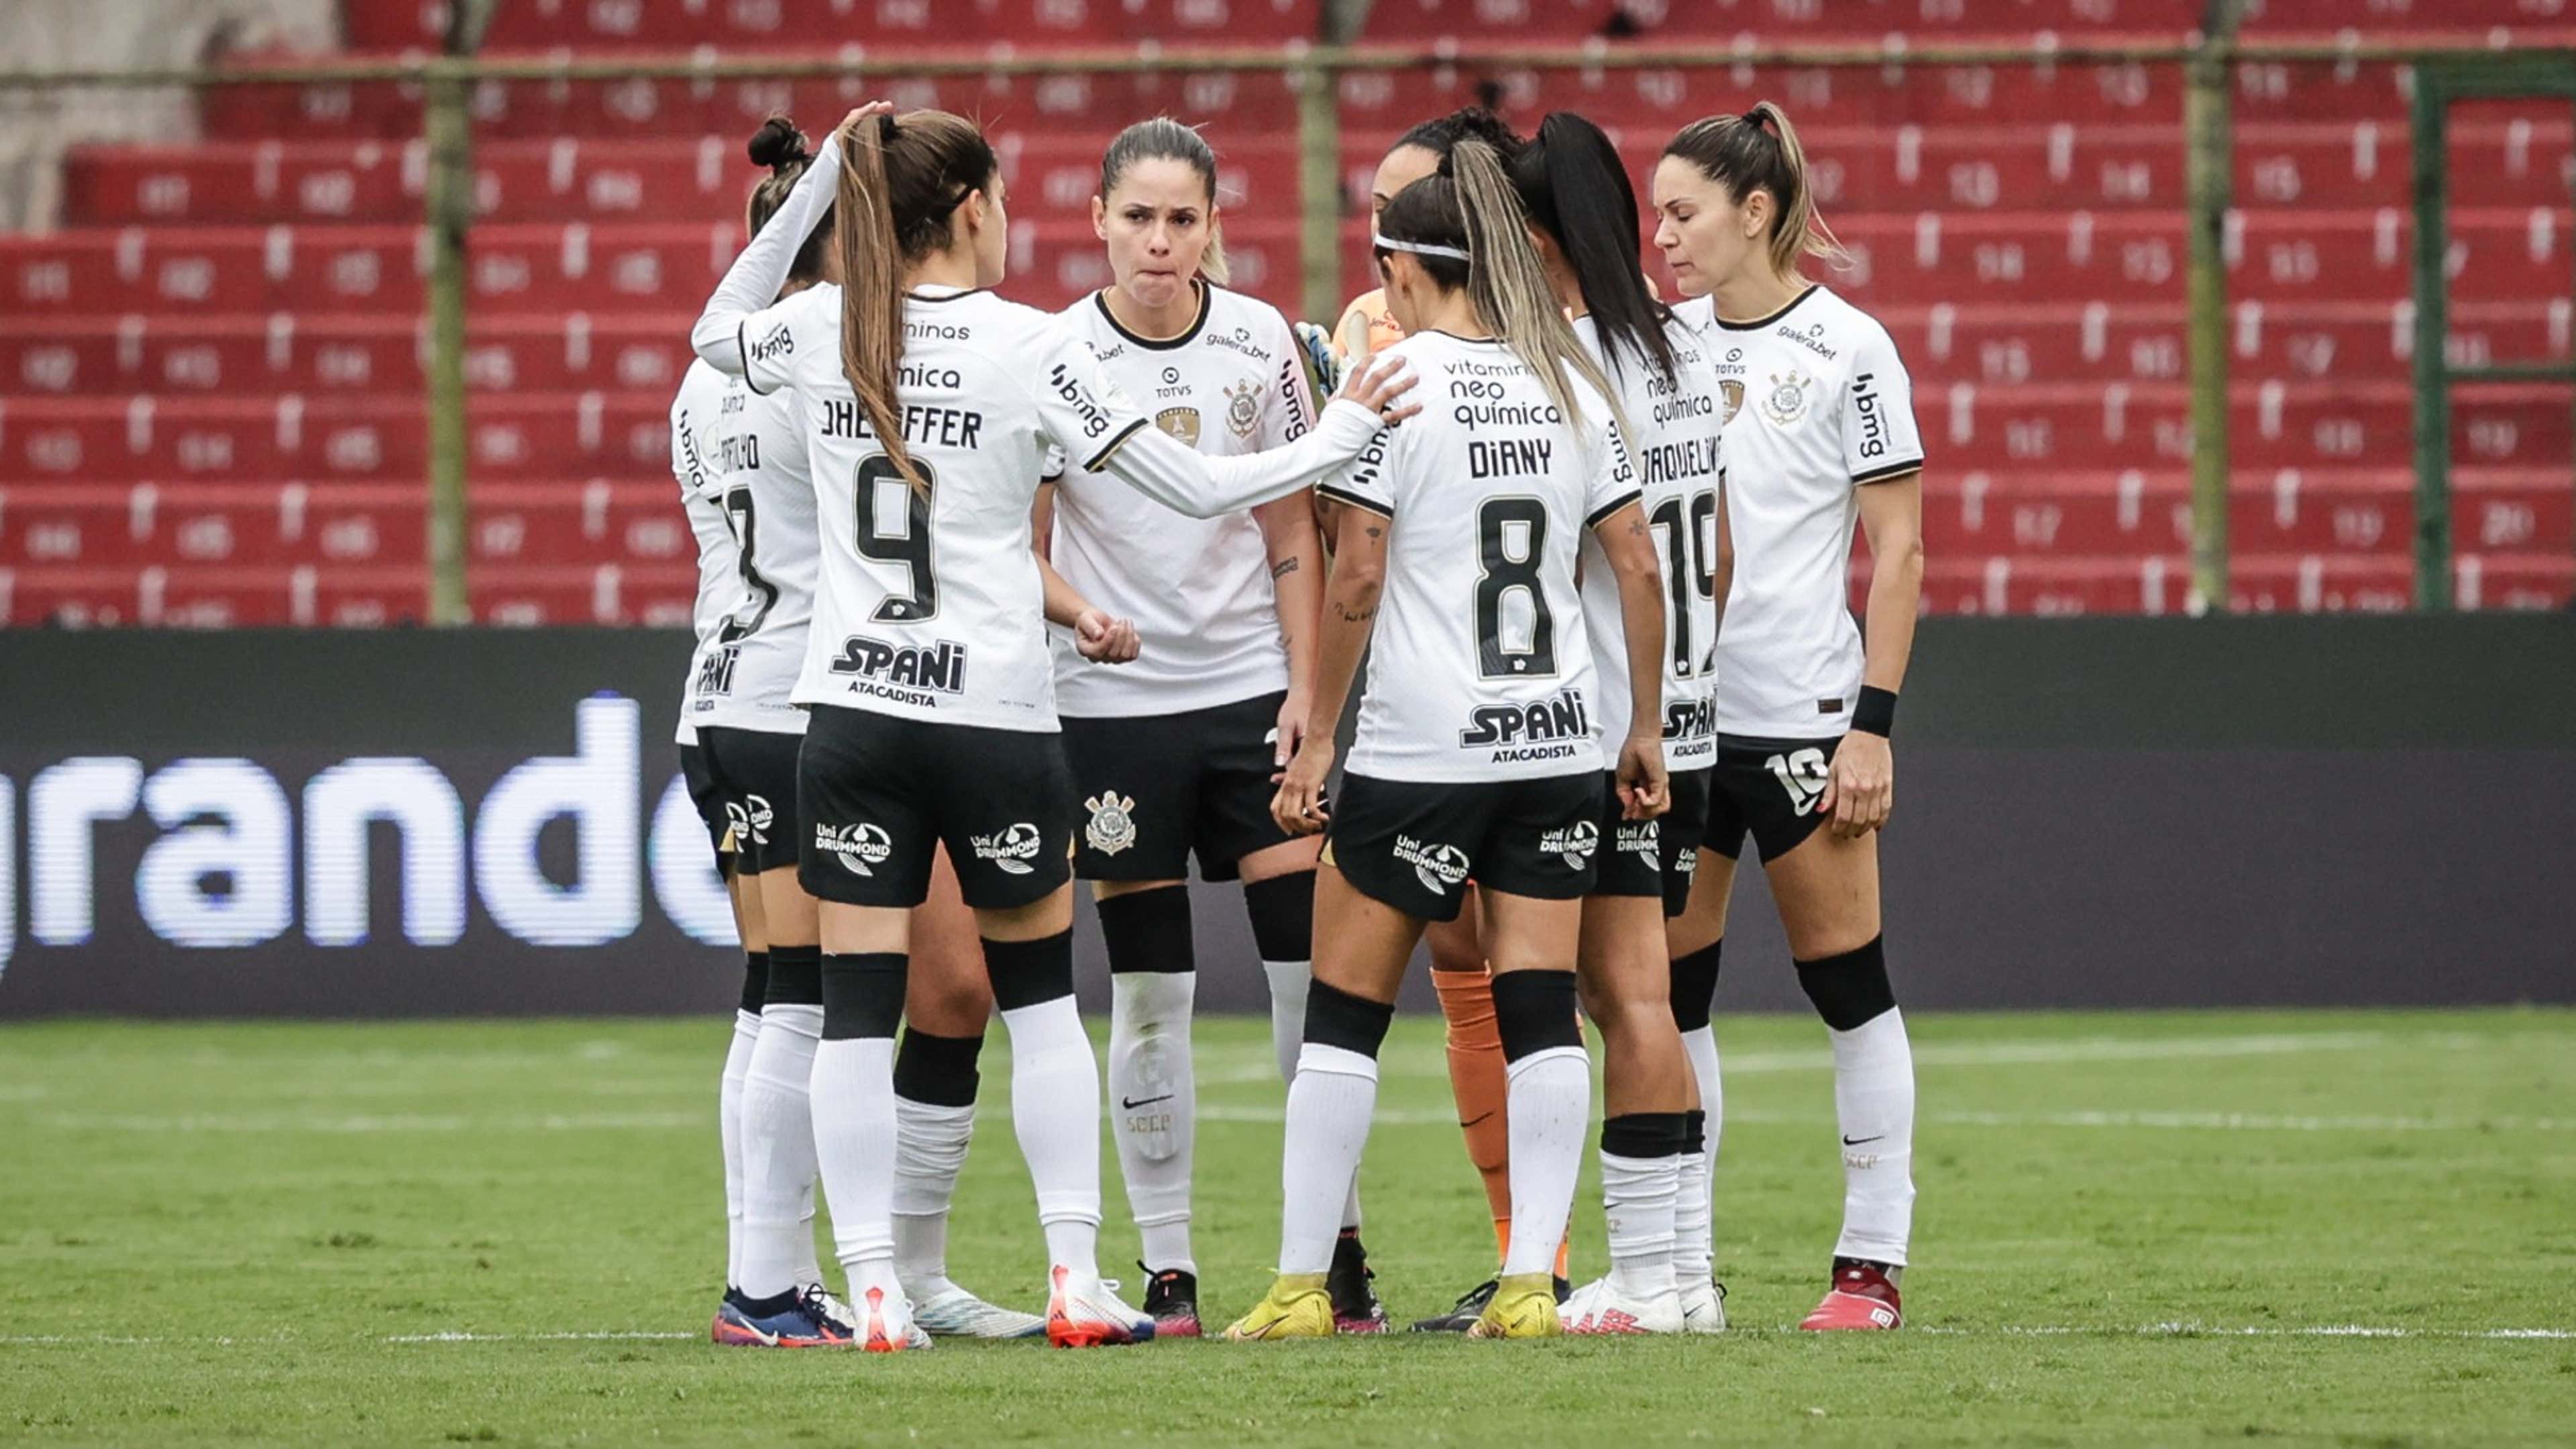 Onde assistir jogo do Corinthians Feminino hj?